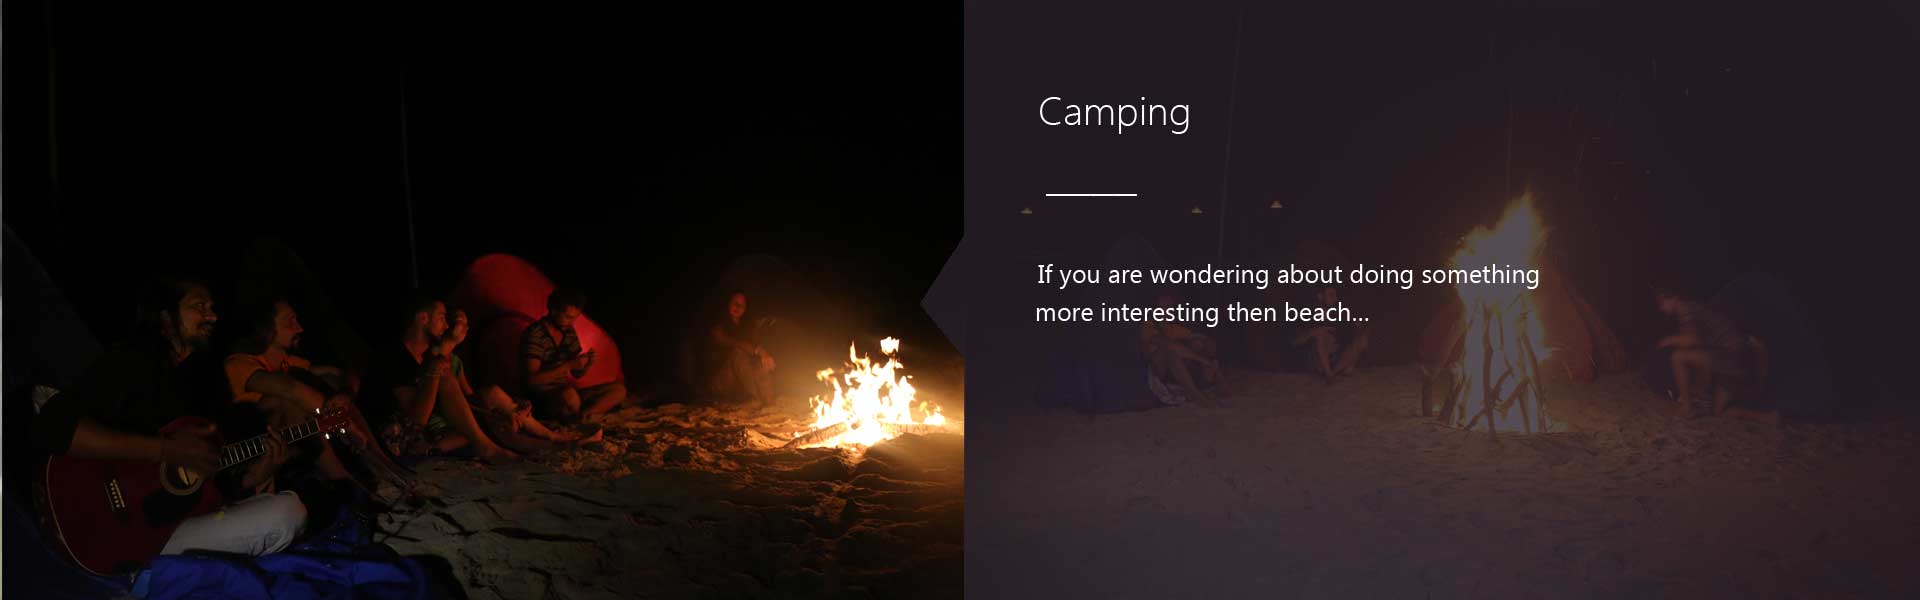 Resort Camping activities